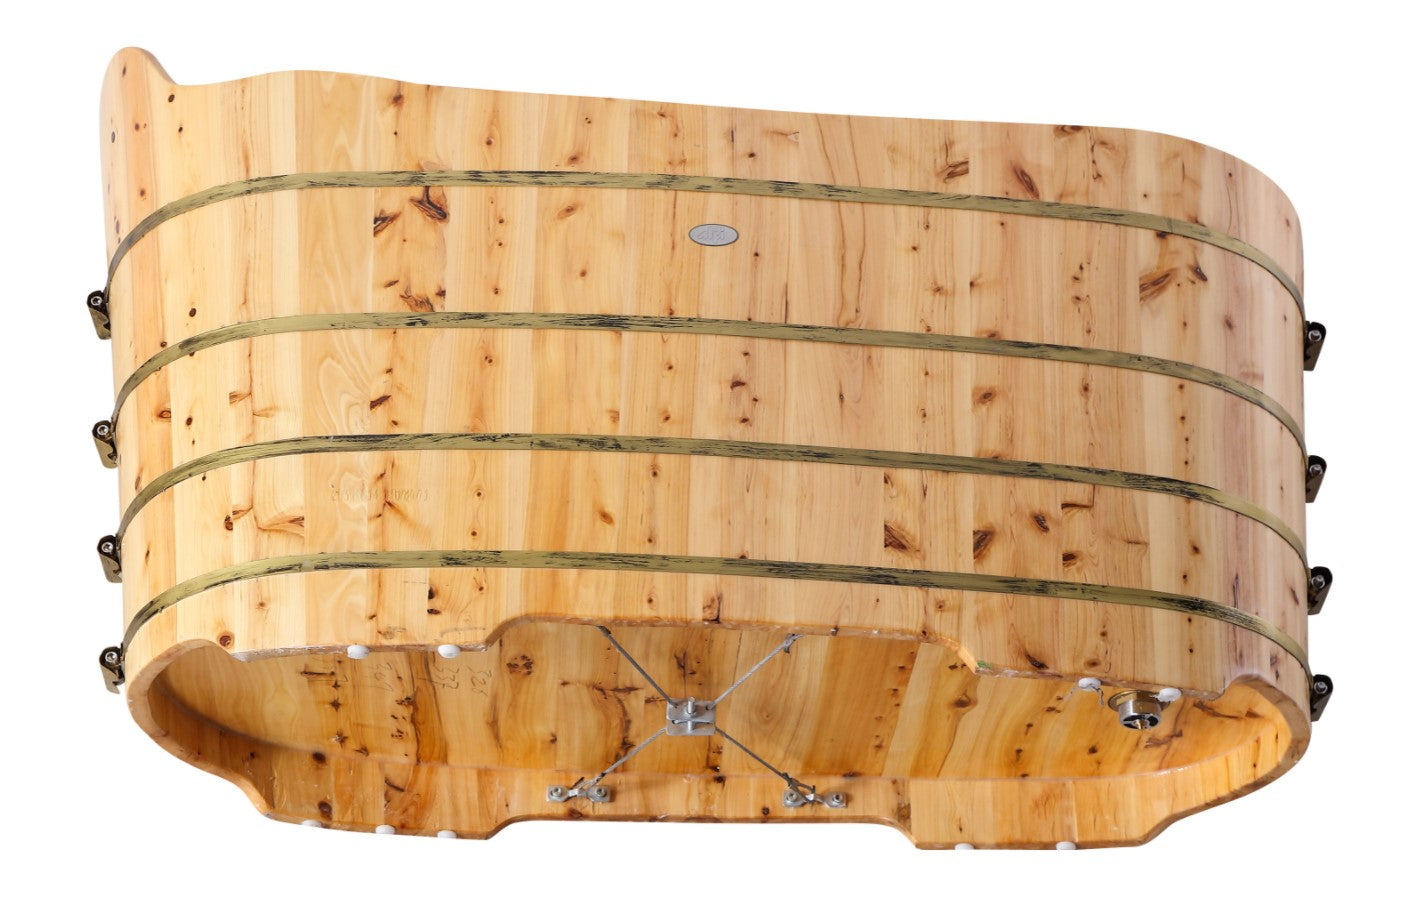 Alfi AB1103 59" Free Standing Cedar Wood Bathtub with Bench